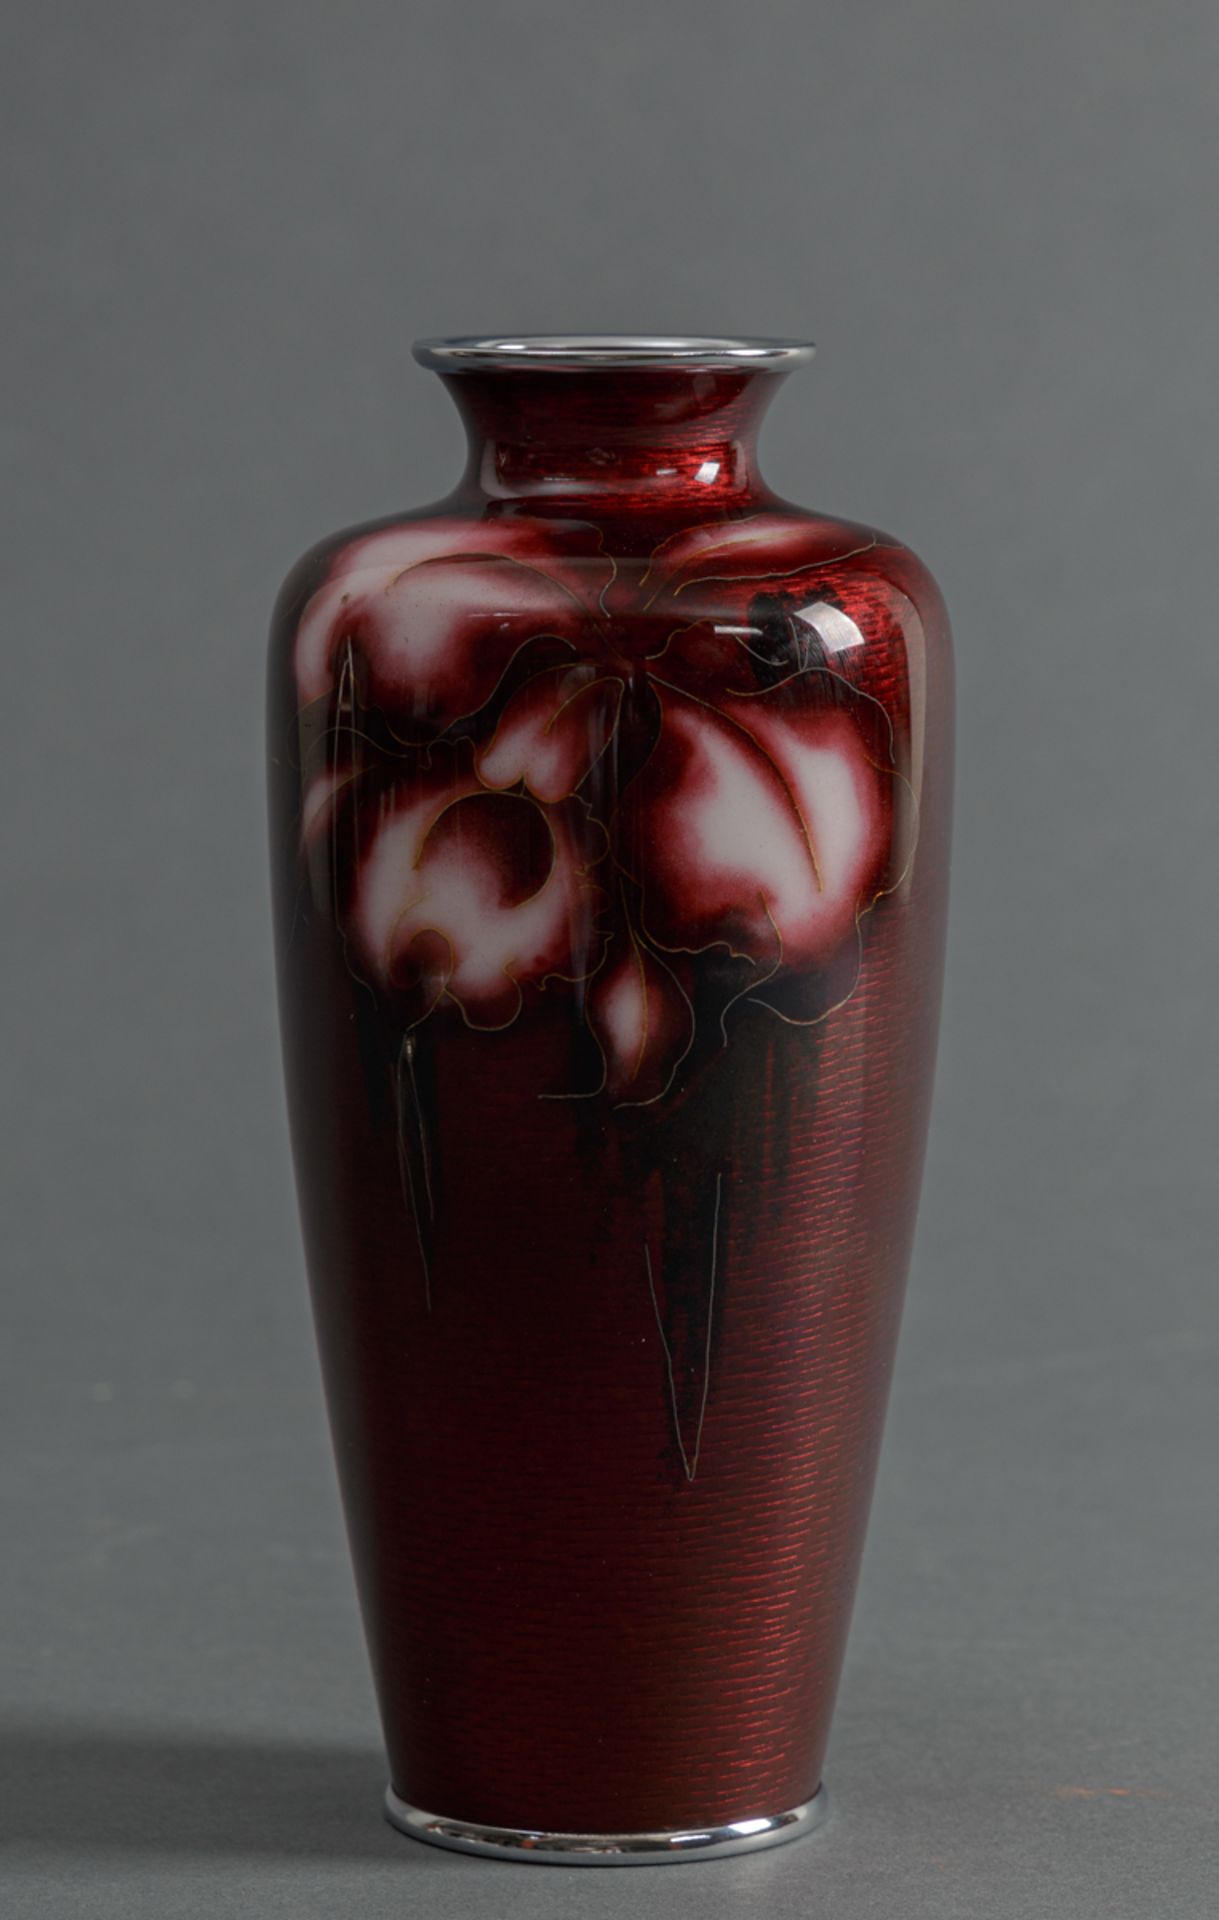 Cloisonné-Vase in Ginbari Technik, Ando Cloisonné Company (aktiv 1880-heute), 20. Jh.